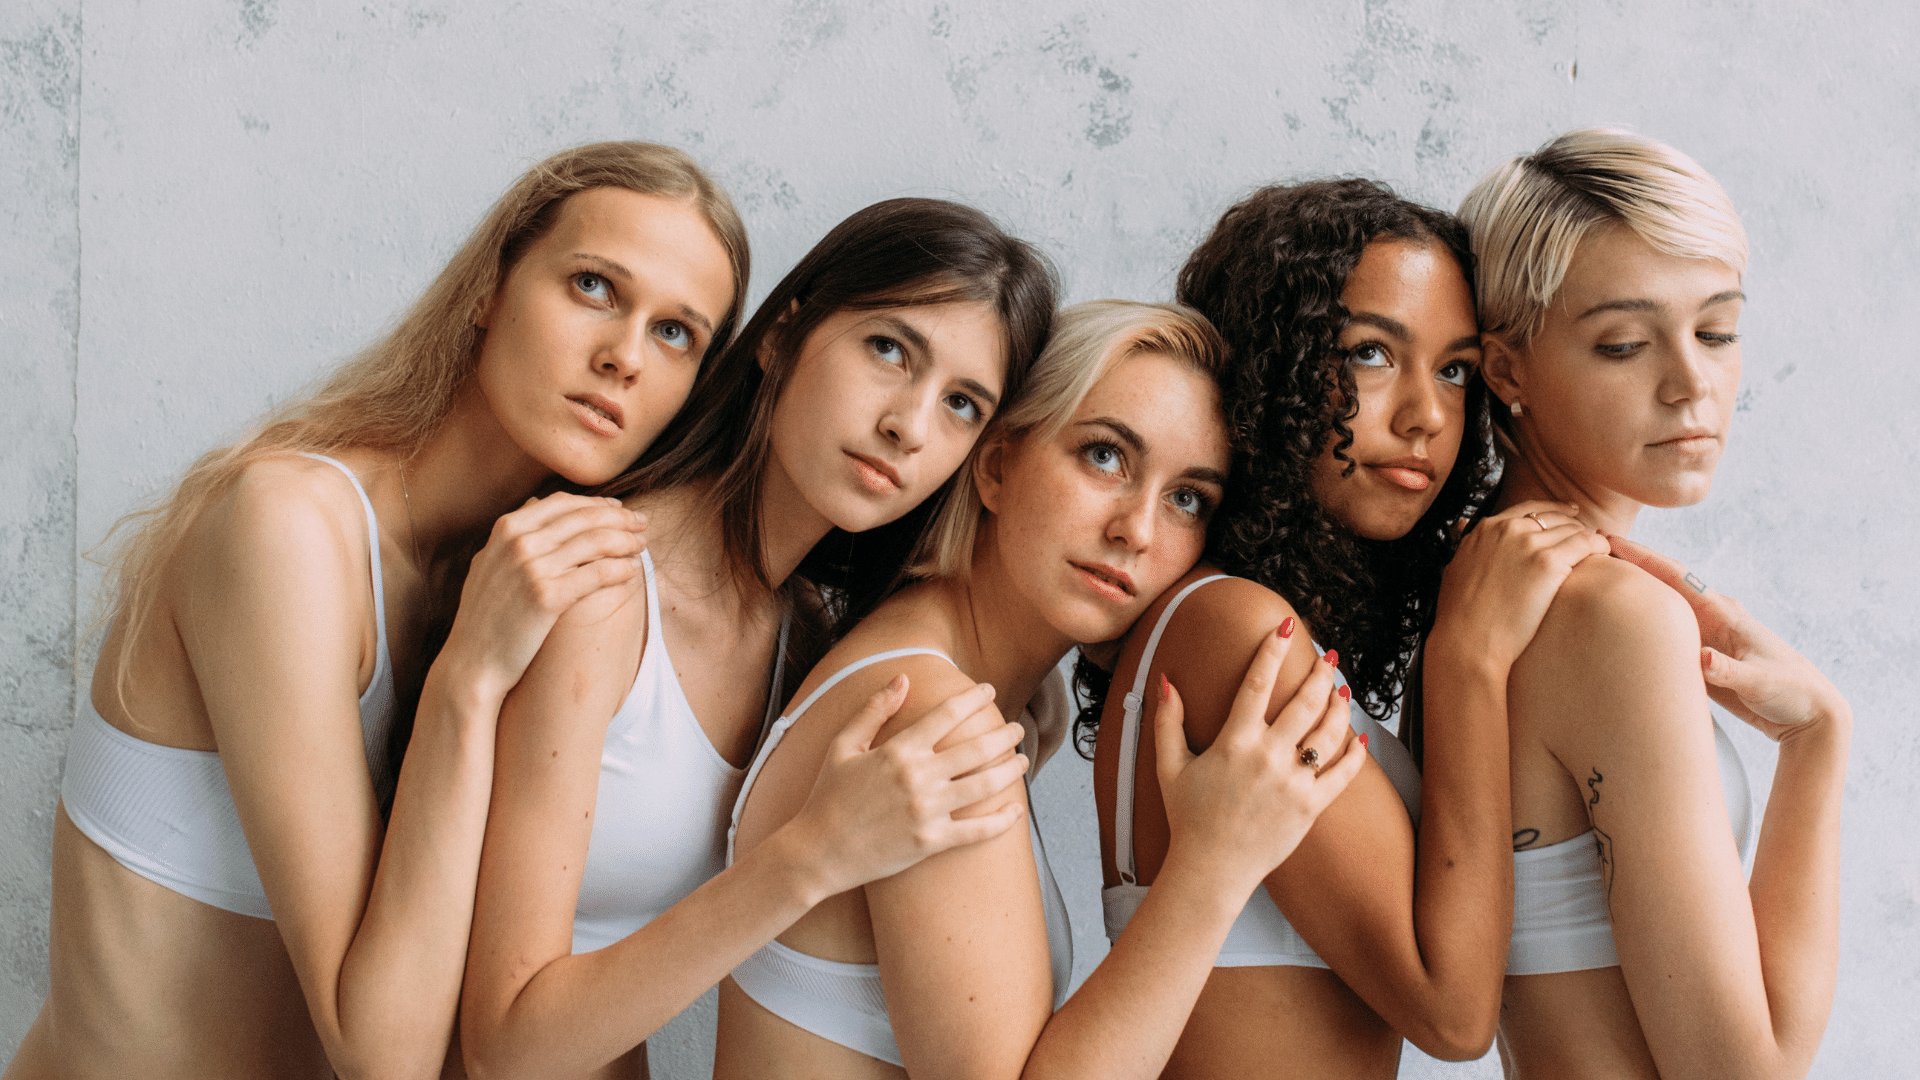 Grupo de cinco mulheres de diversas etnias abraçadas com uma expressão séria